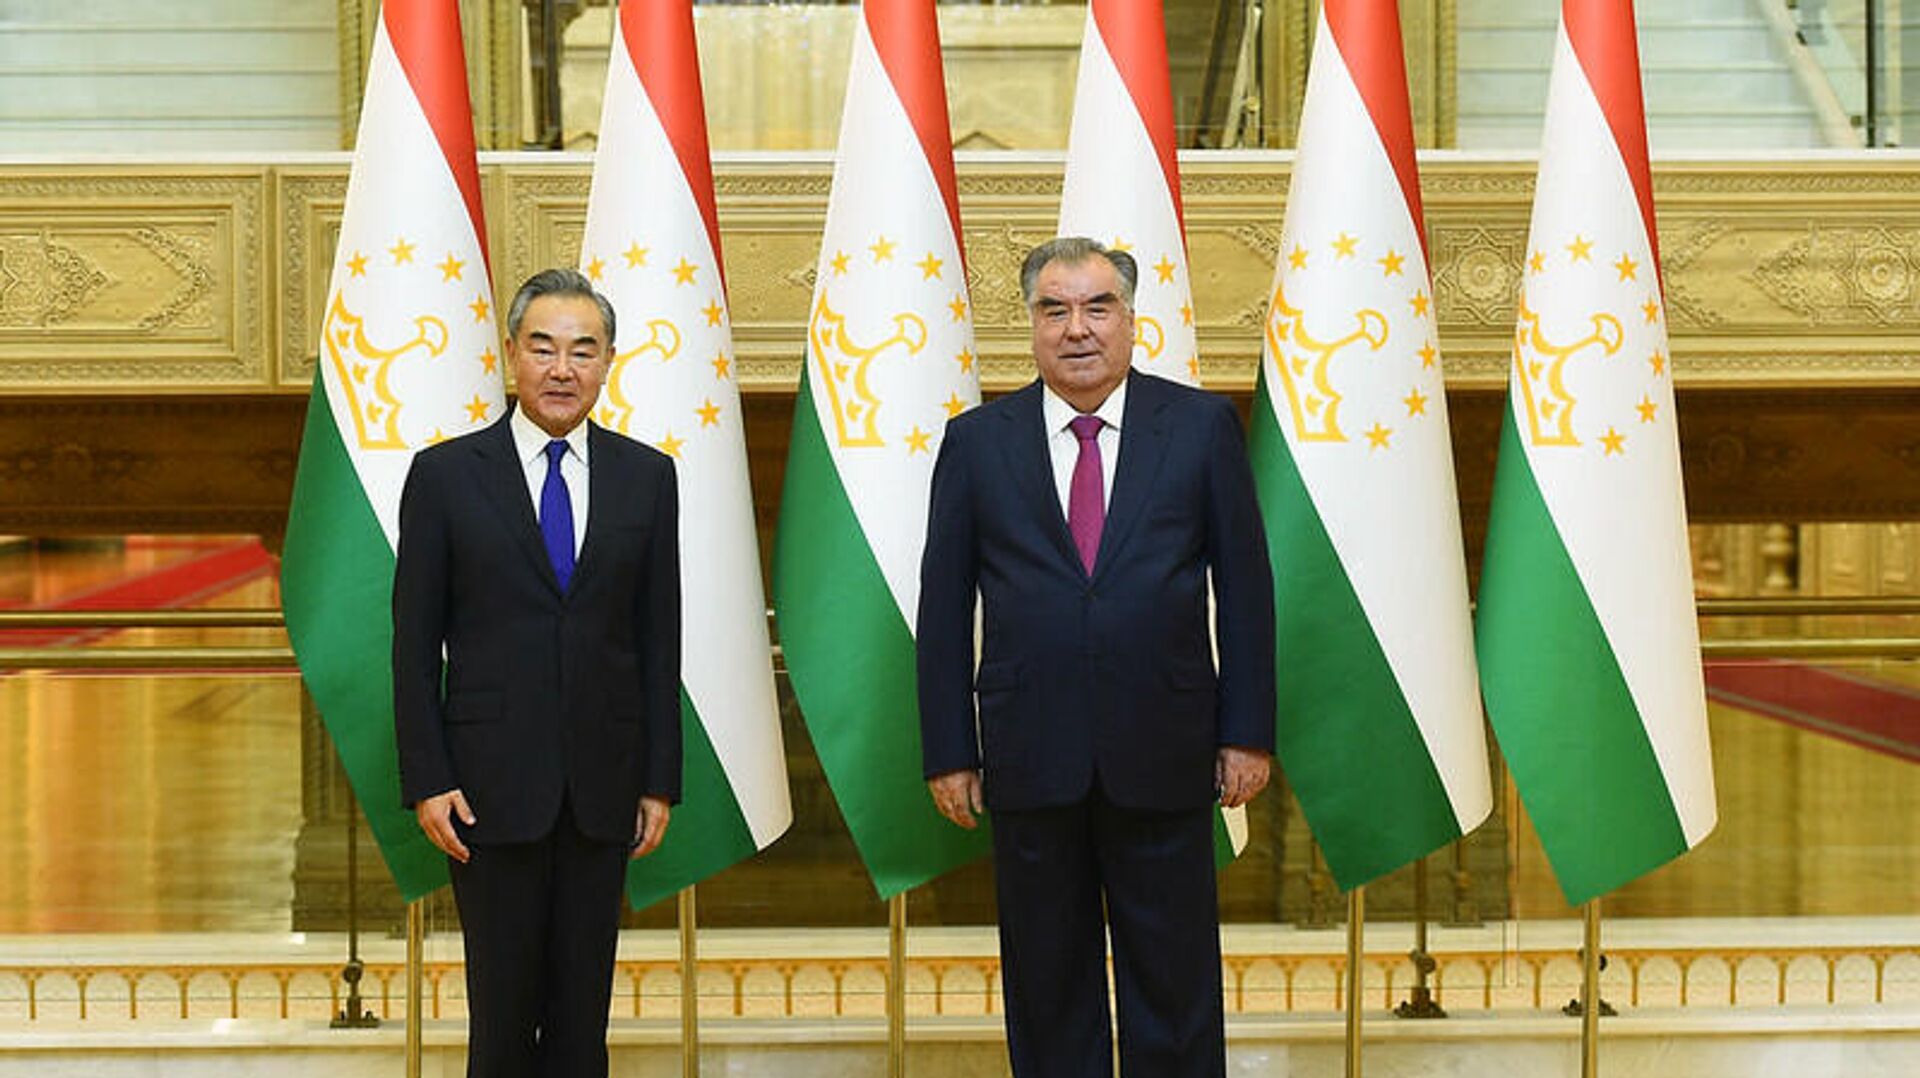 Президент Таджикистана Эмомали Рахмон провел встречу с министром иностранных дел Китая Ван И - Sputnik Таджикистан, 1920, 14.07.2021